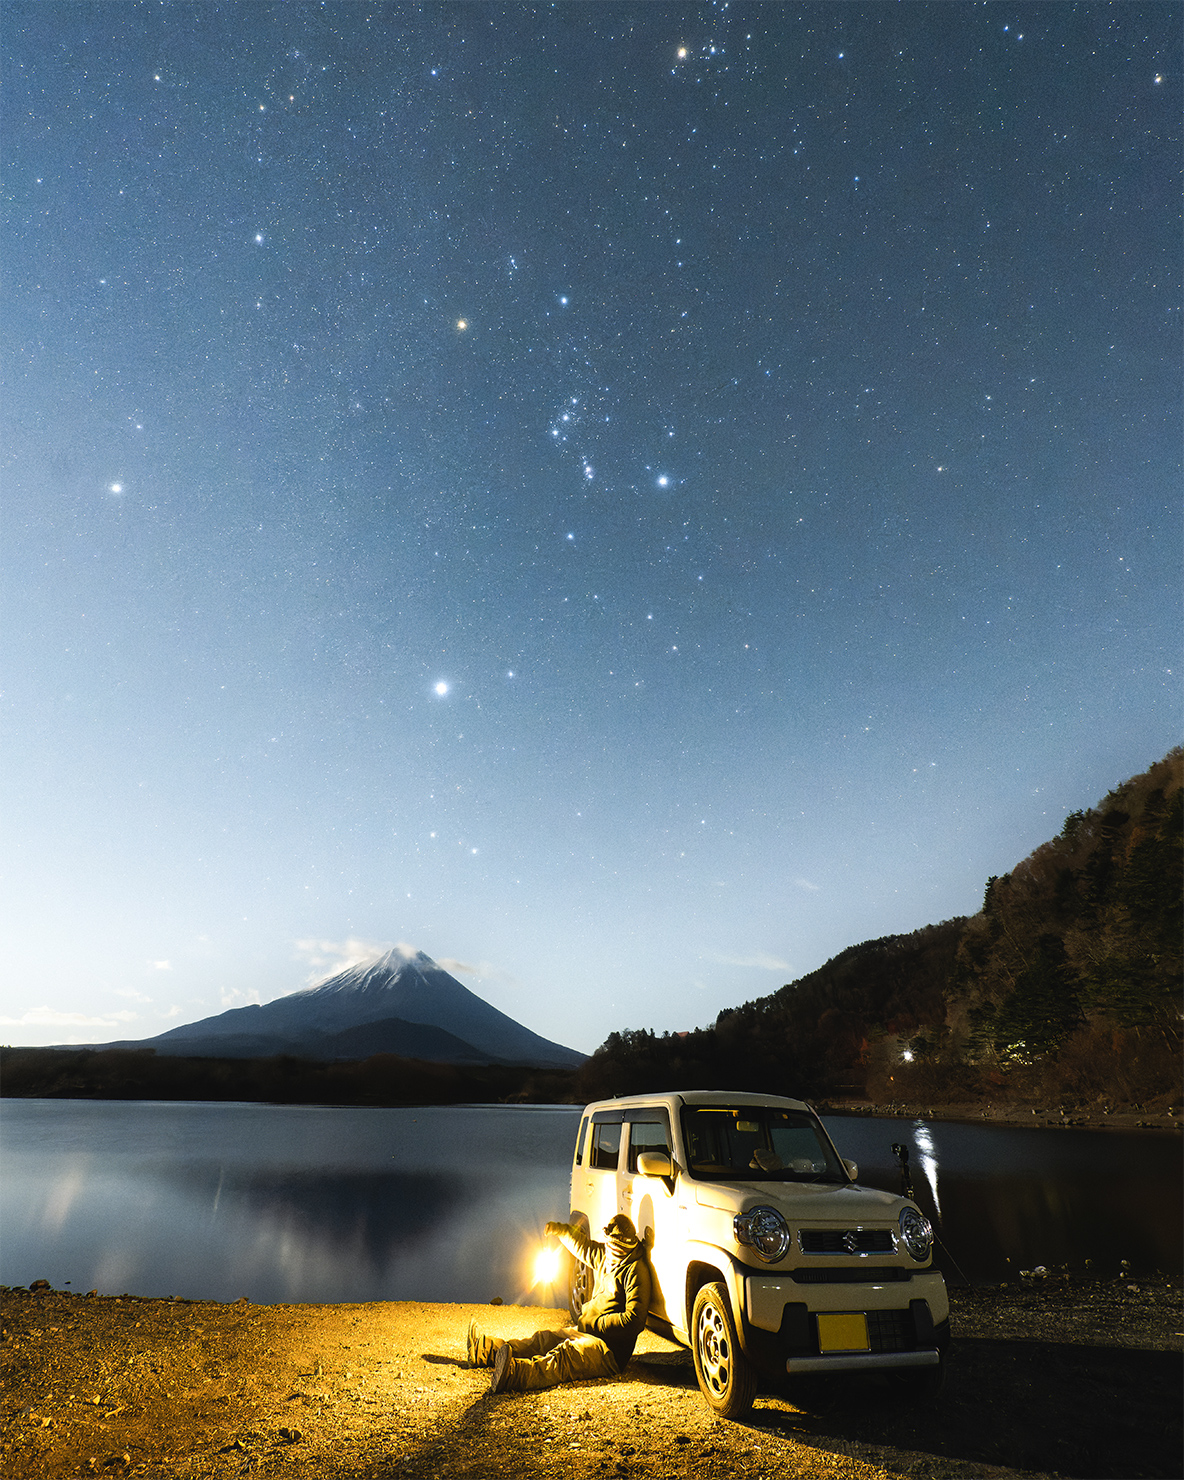 ナイススマイル賞　関岡大晃 @hirography_321さんの作品「愛車と眺める星空」